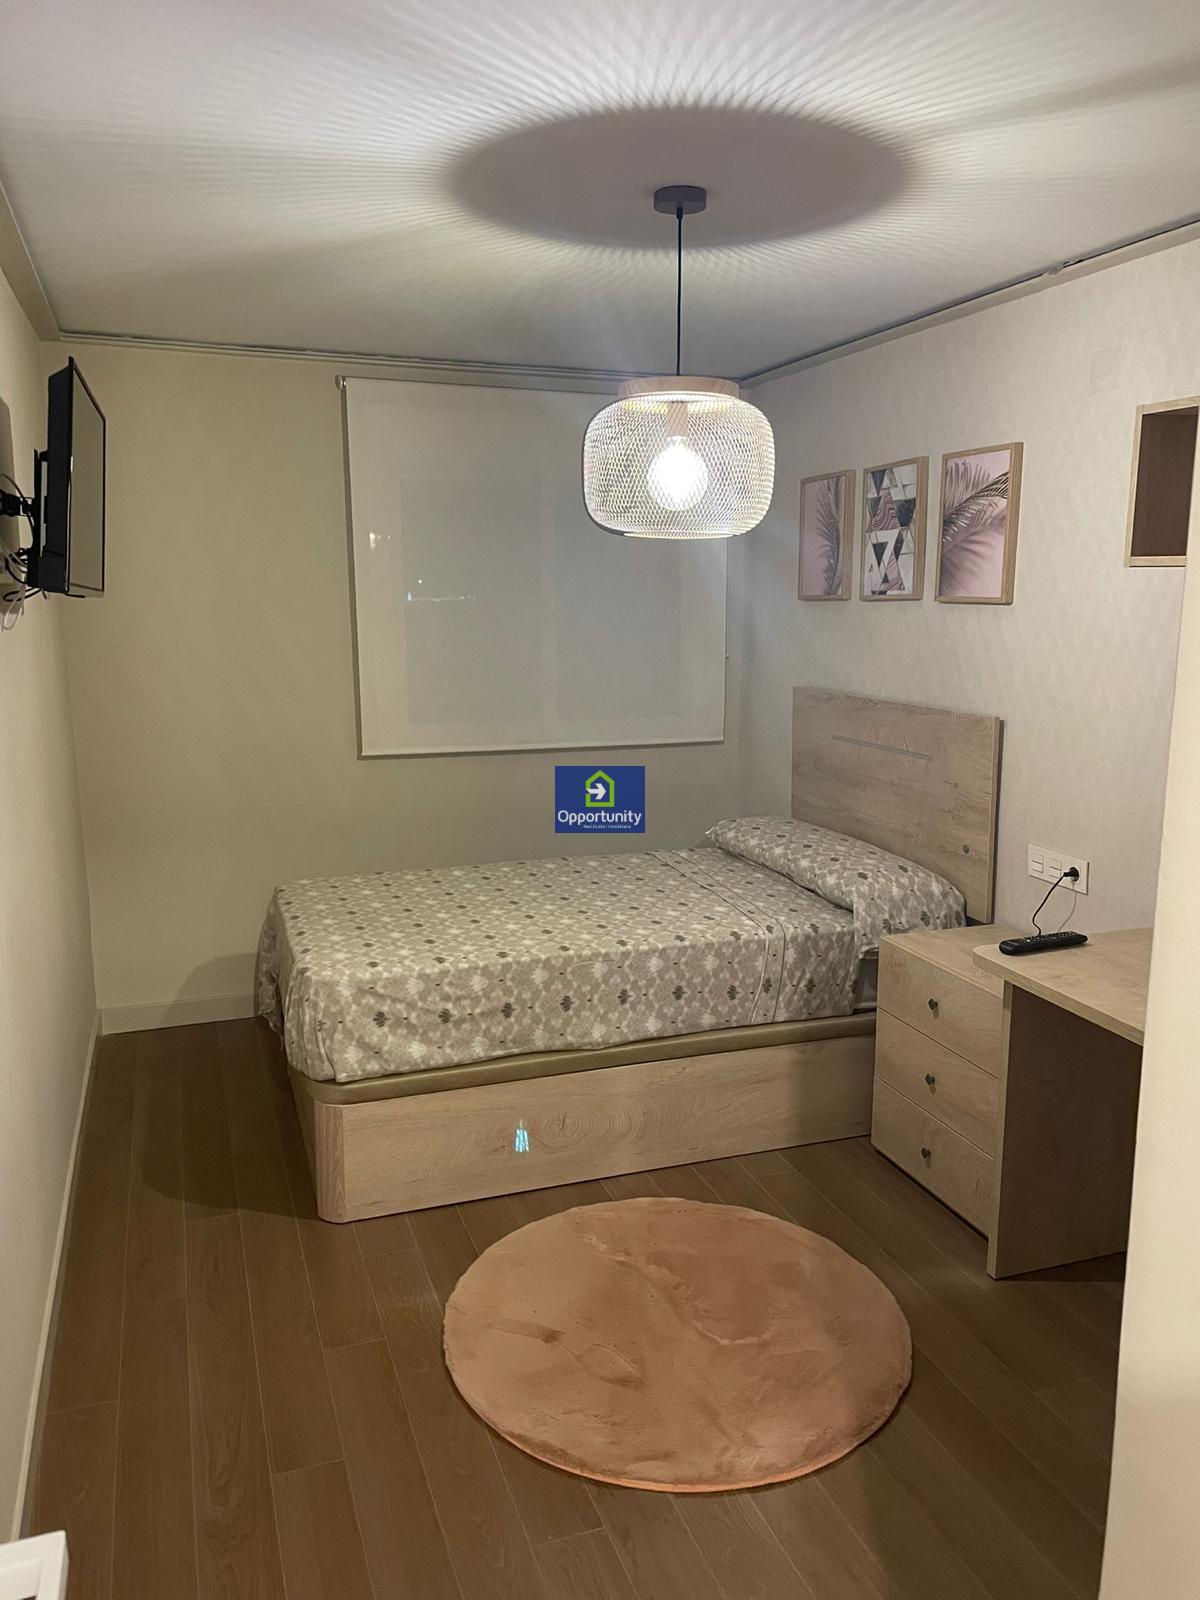 Квартира Аренда на длительный срок На Campo Verde (Granada), 800 €/месяц (Cезон)